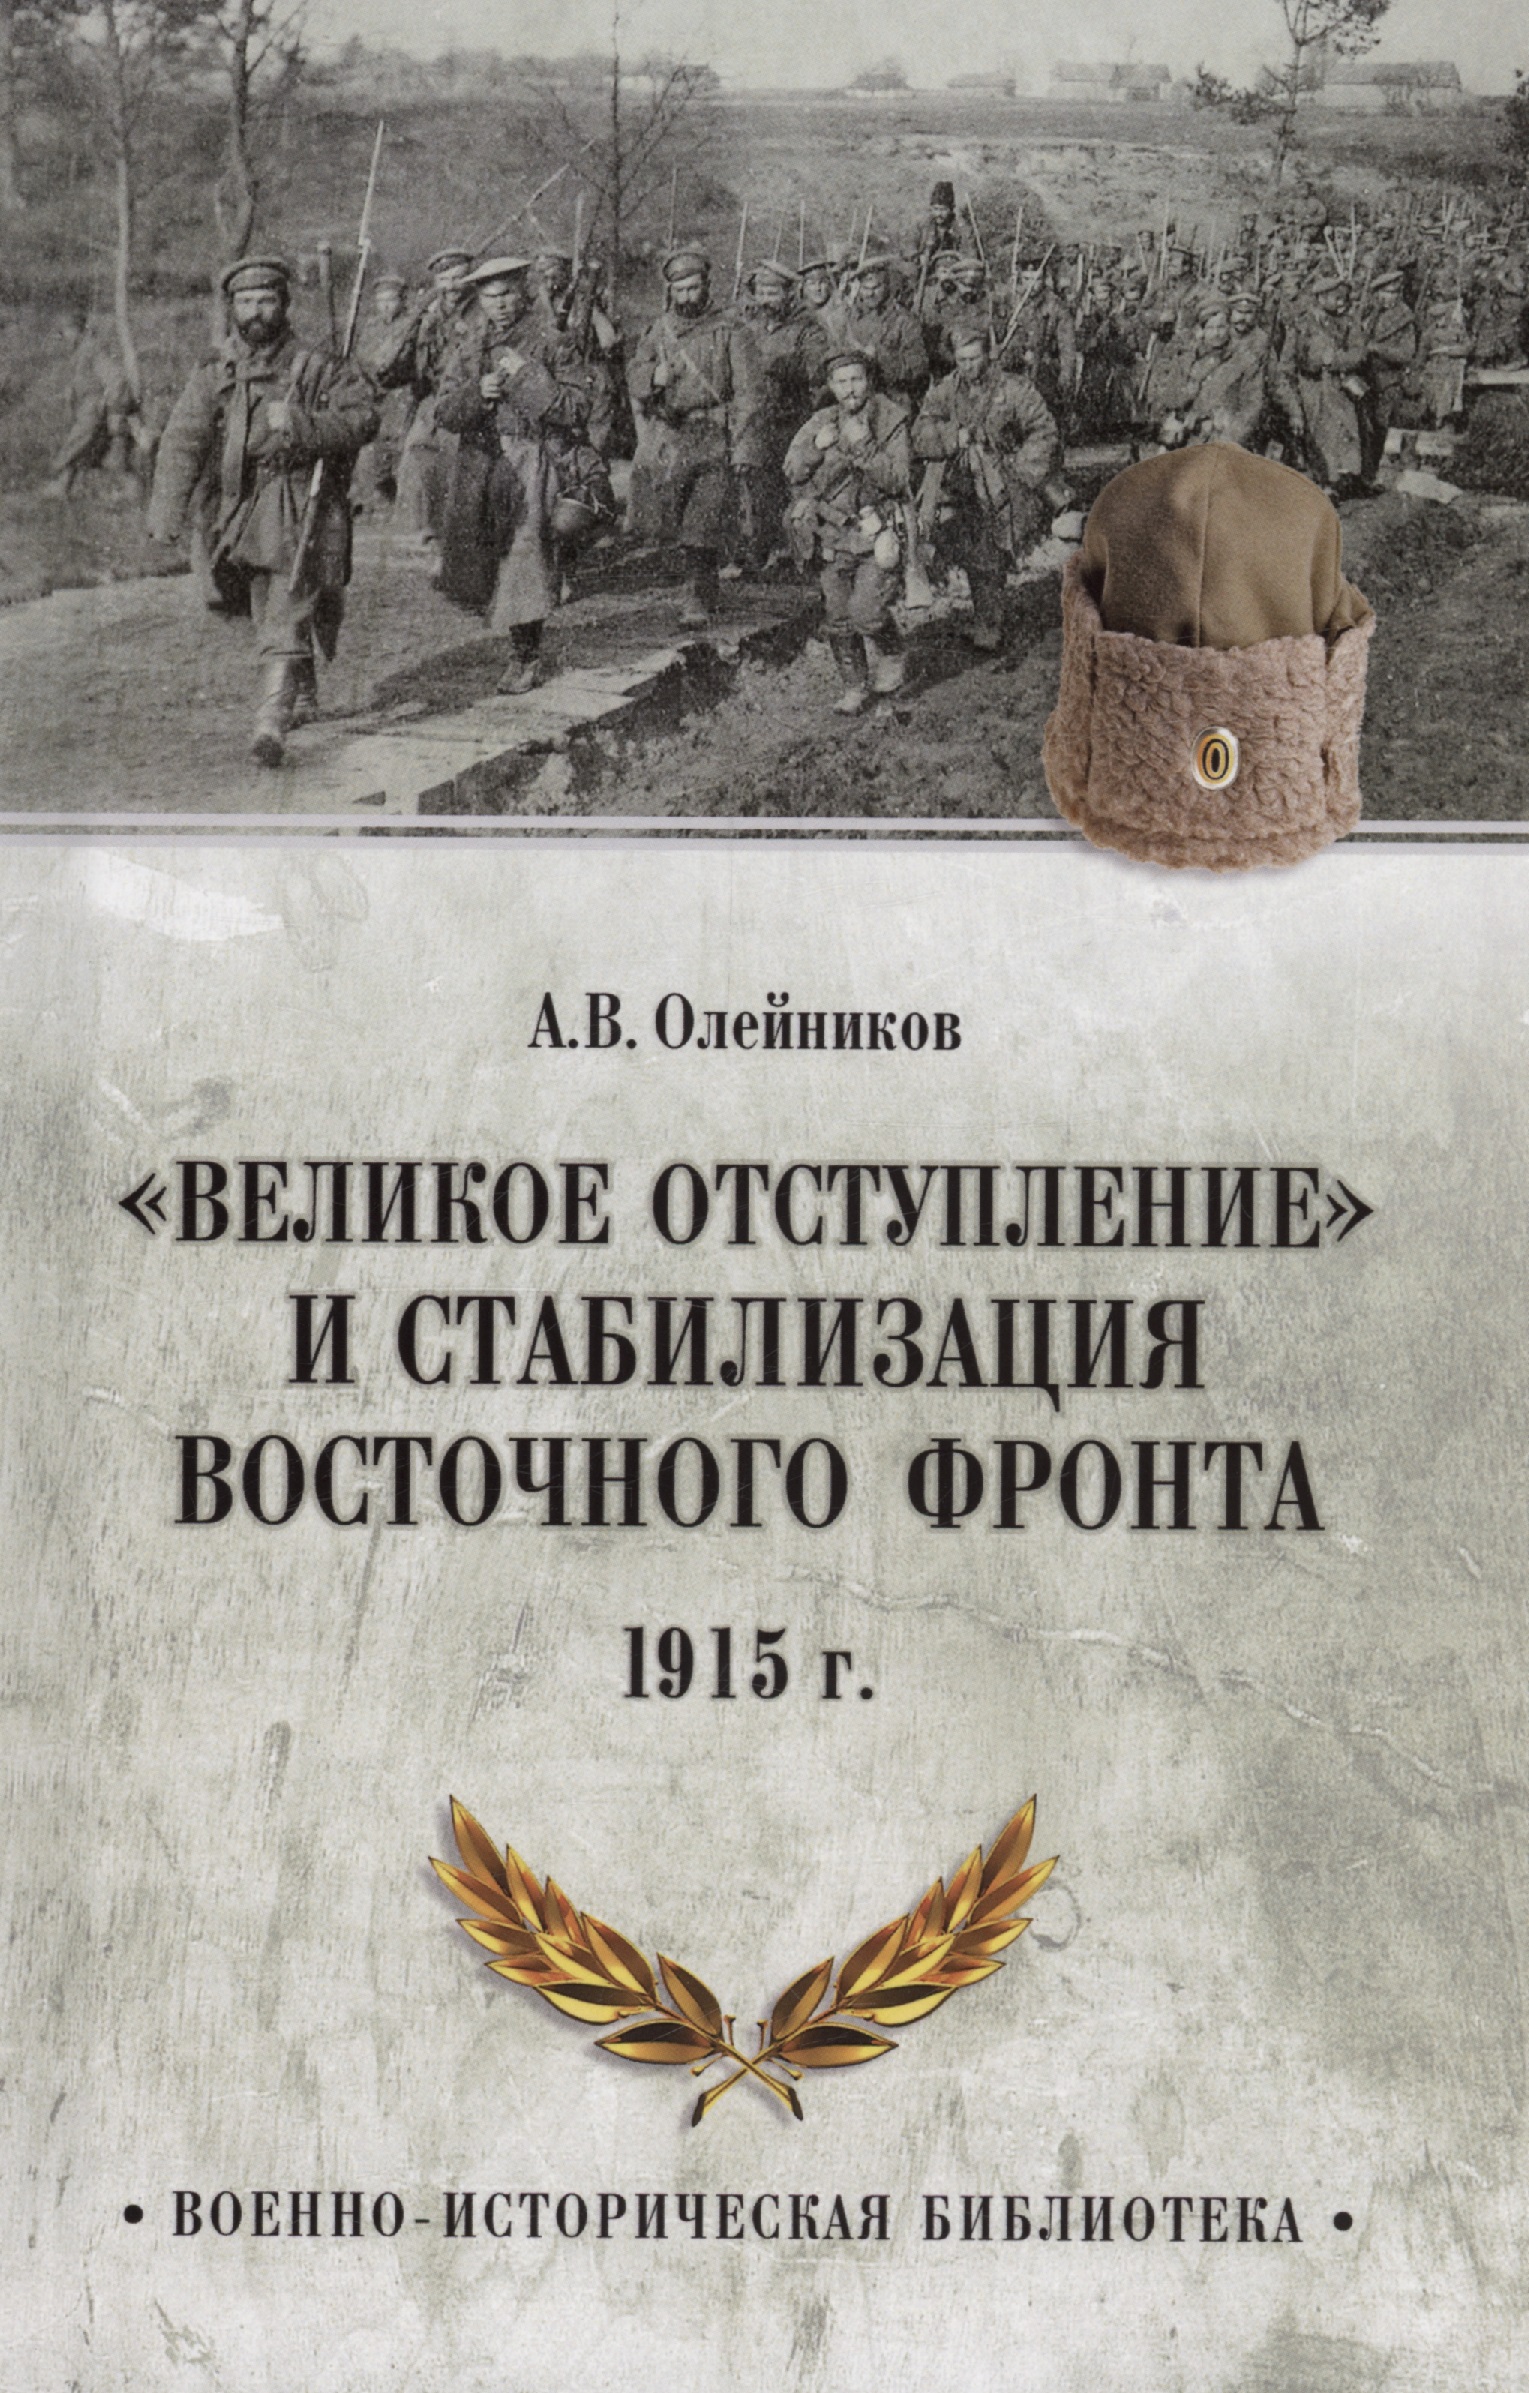 Олейников Алексей Владимирович - "Великое отступление" и стабилизация Восточного фронта. 1915